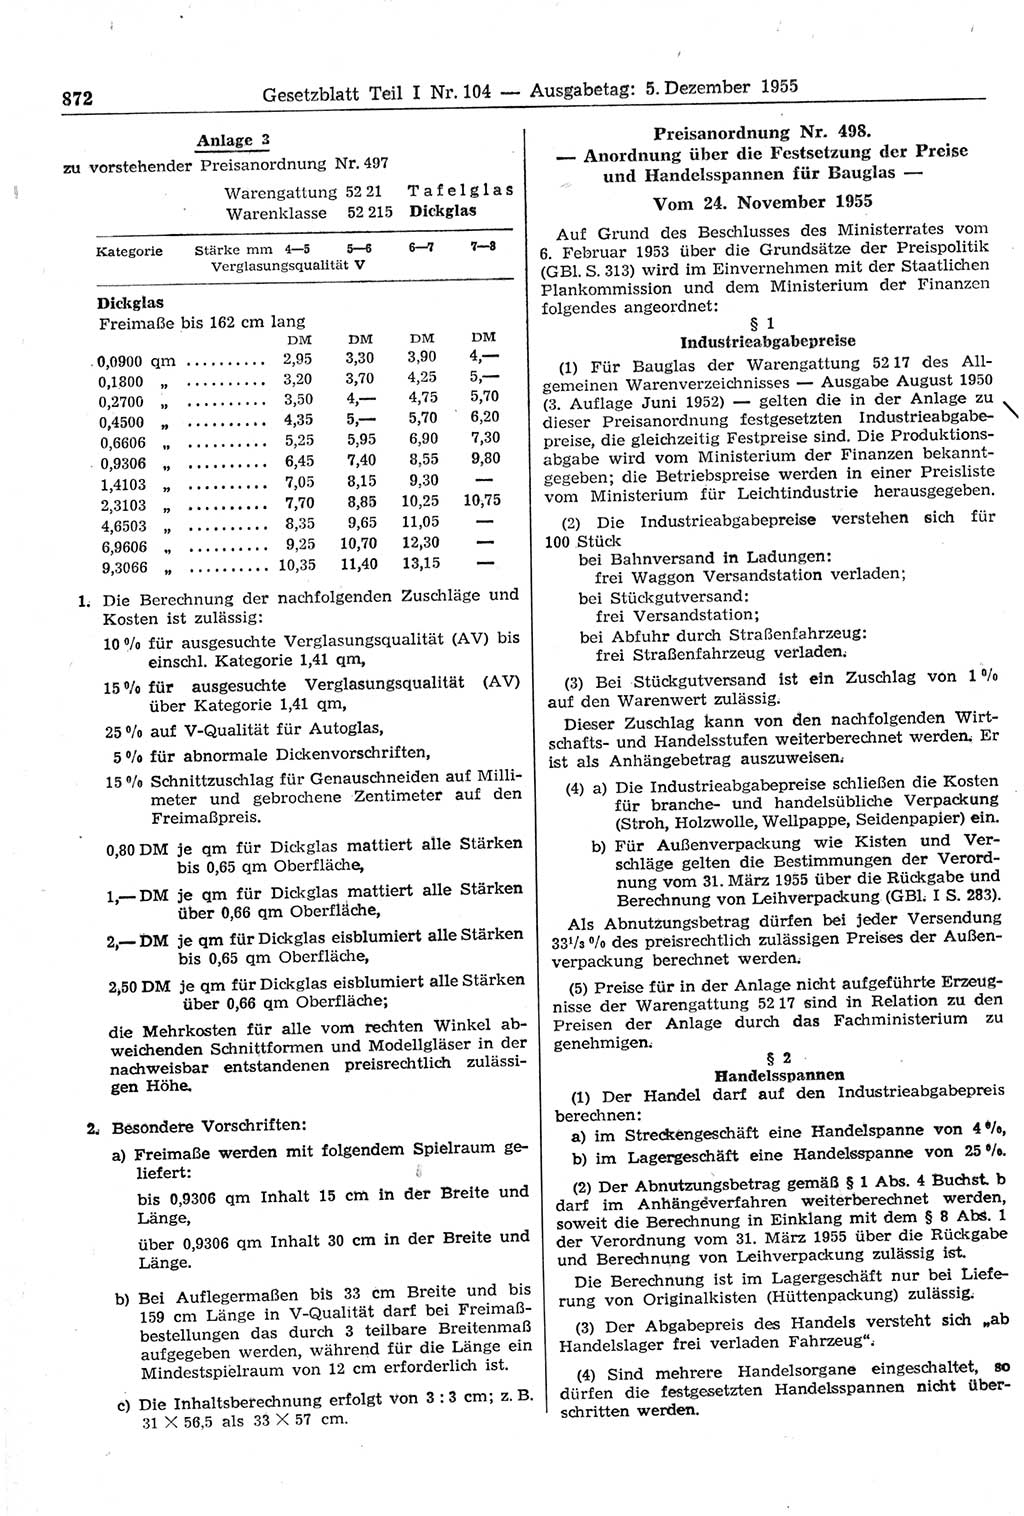 Gesetzblatt (GBl.) der Deutschen Demokratischen Republik (DDR) Teil Ⅰ 1955, Seite 872 (GBl. DDR Ⅰ 1955, S. 872)